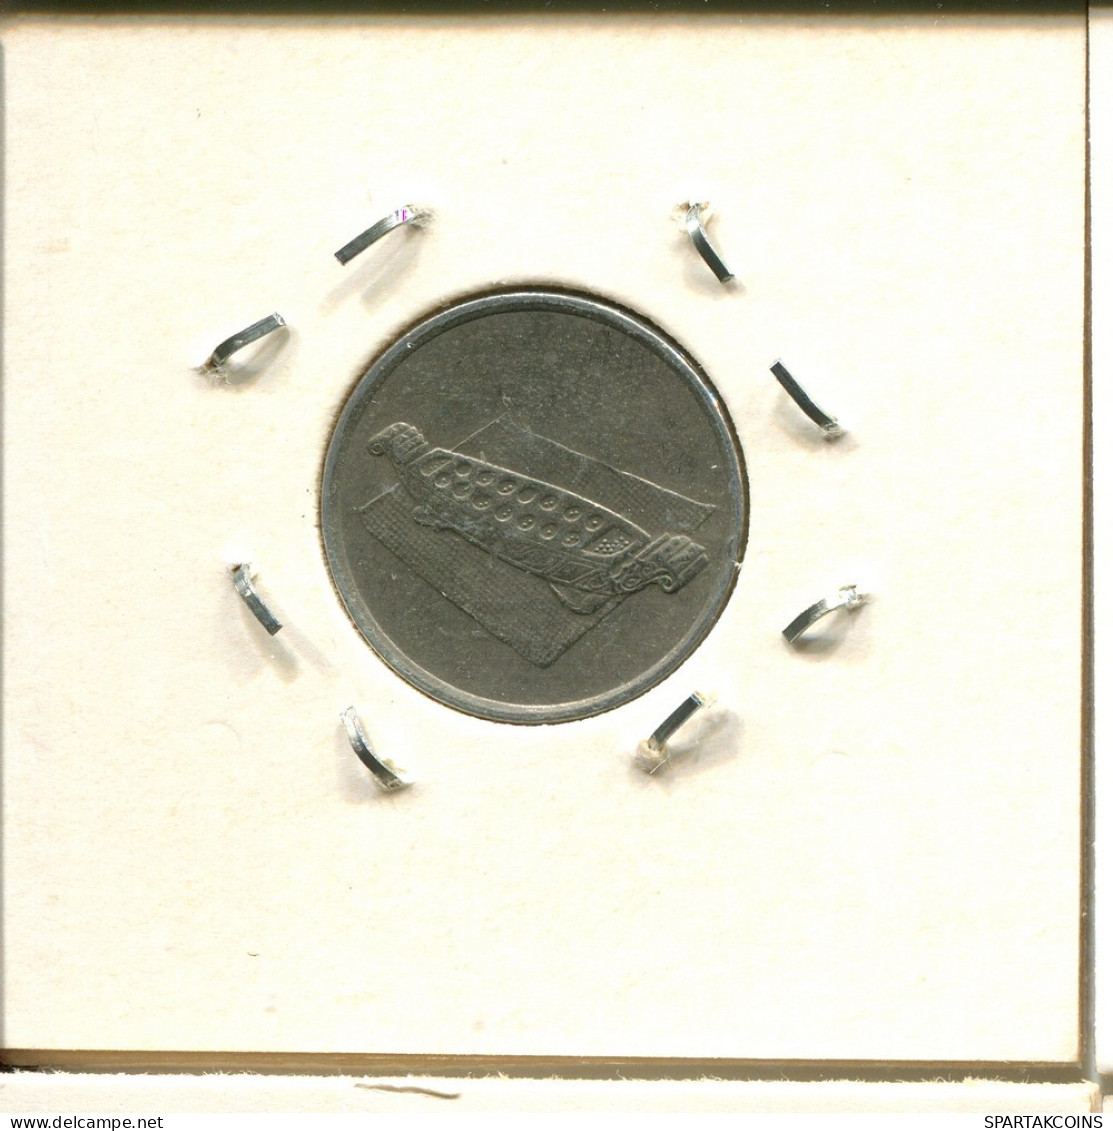 10 SEN 1991 MALAYSIA Coin #BA121.U.A - Malaysia